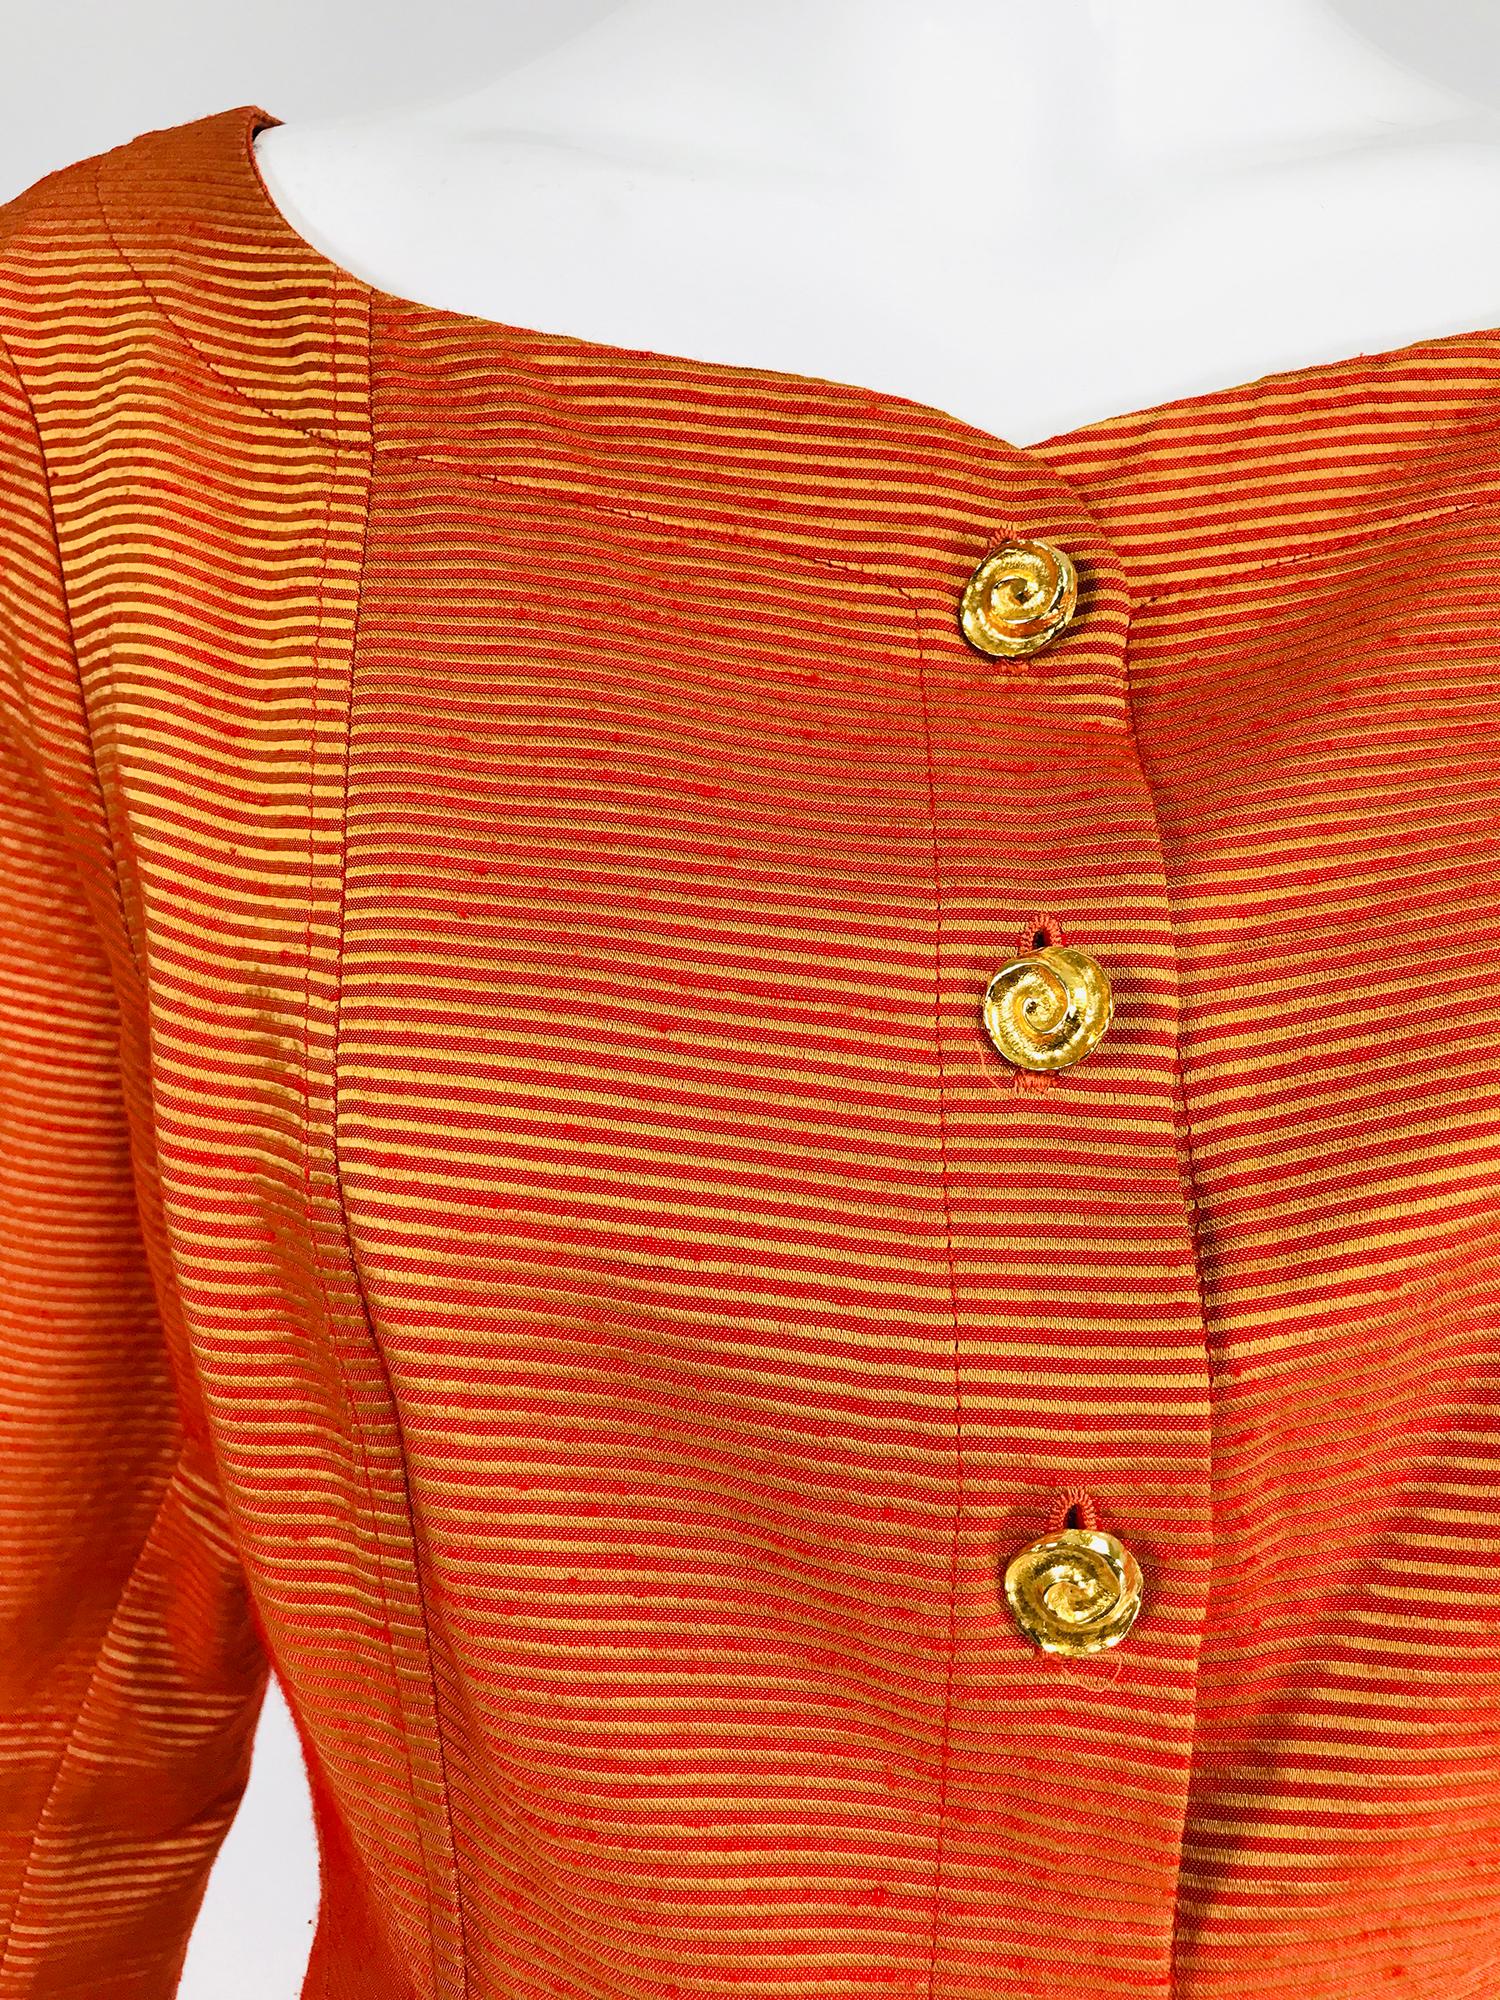 Yves Saint Rive Gauche Orange & Gold Stripe Faille Jacket Vintage For Sale 1